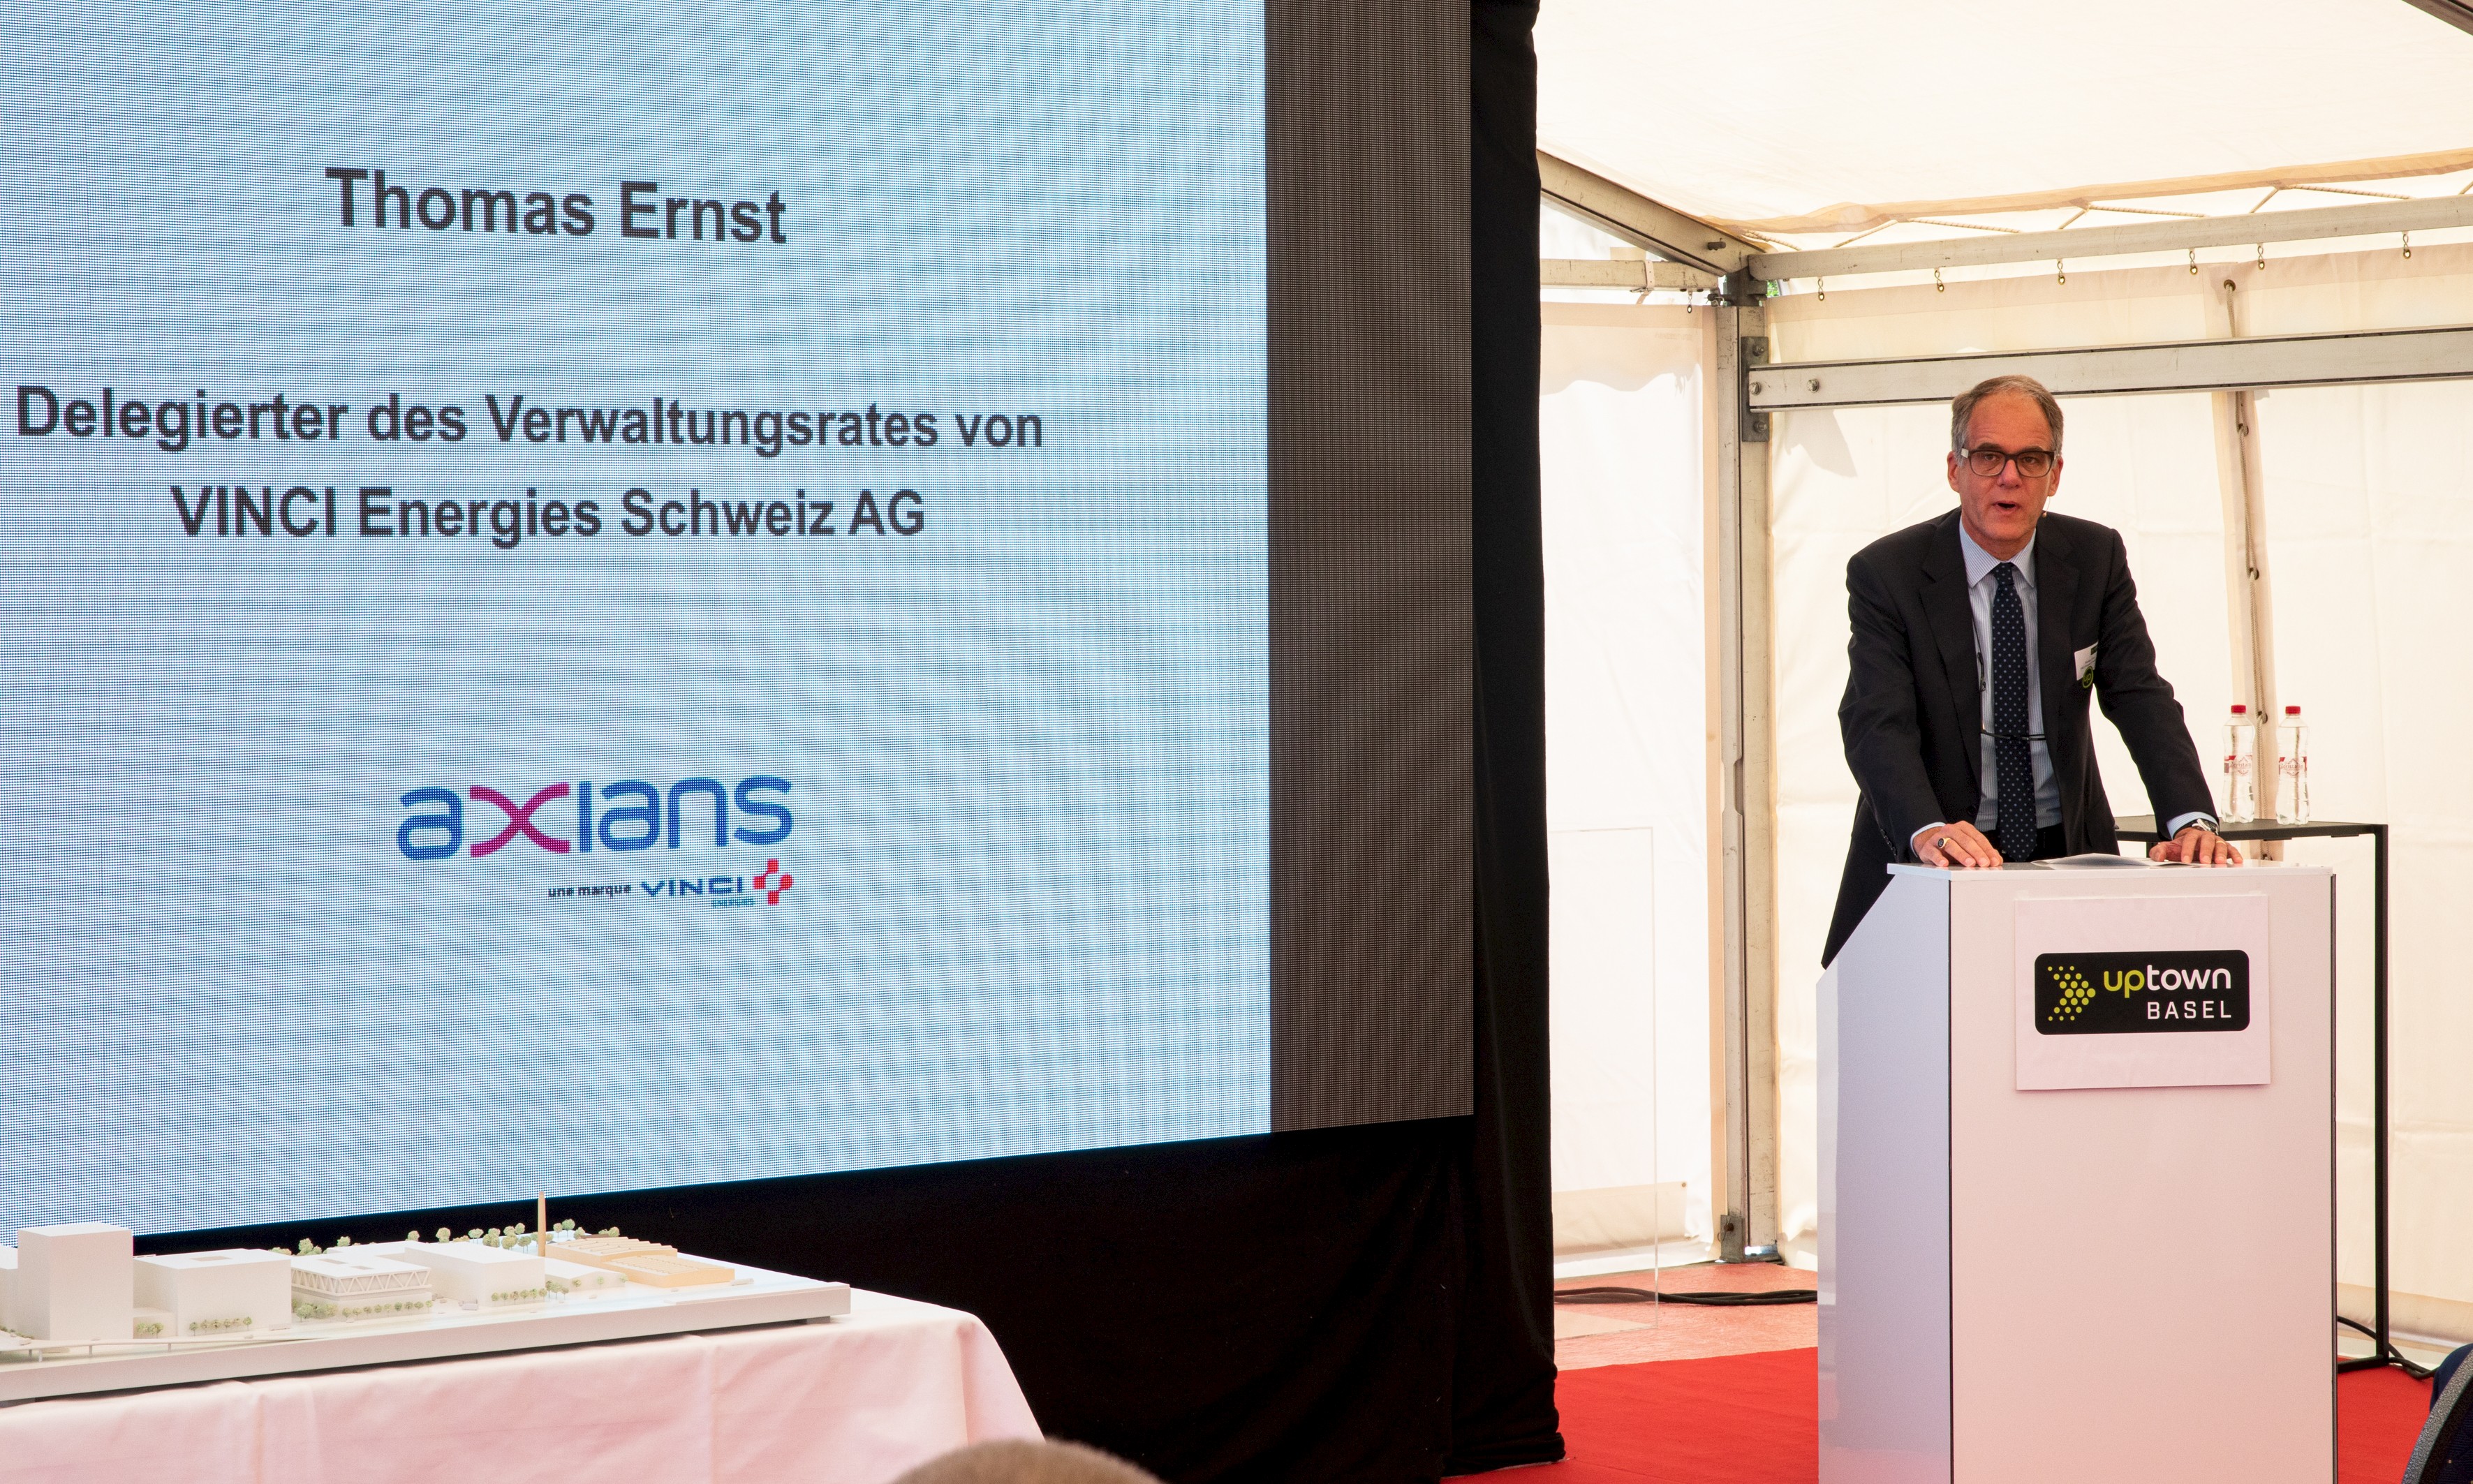 Einer der ersten Mieter des ersten Gebäudes wird Axians sein. Thomas Ernst, CEO und VR-Delegierter von VINCI Energies Schweiz AG, präsentiert den zukünftigen Nutzen des Areals.